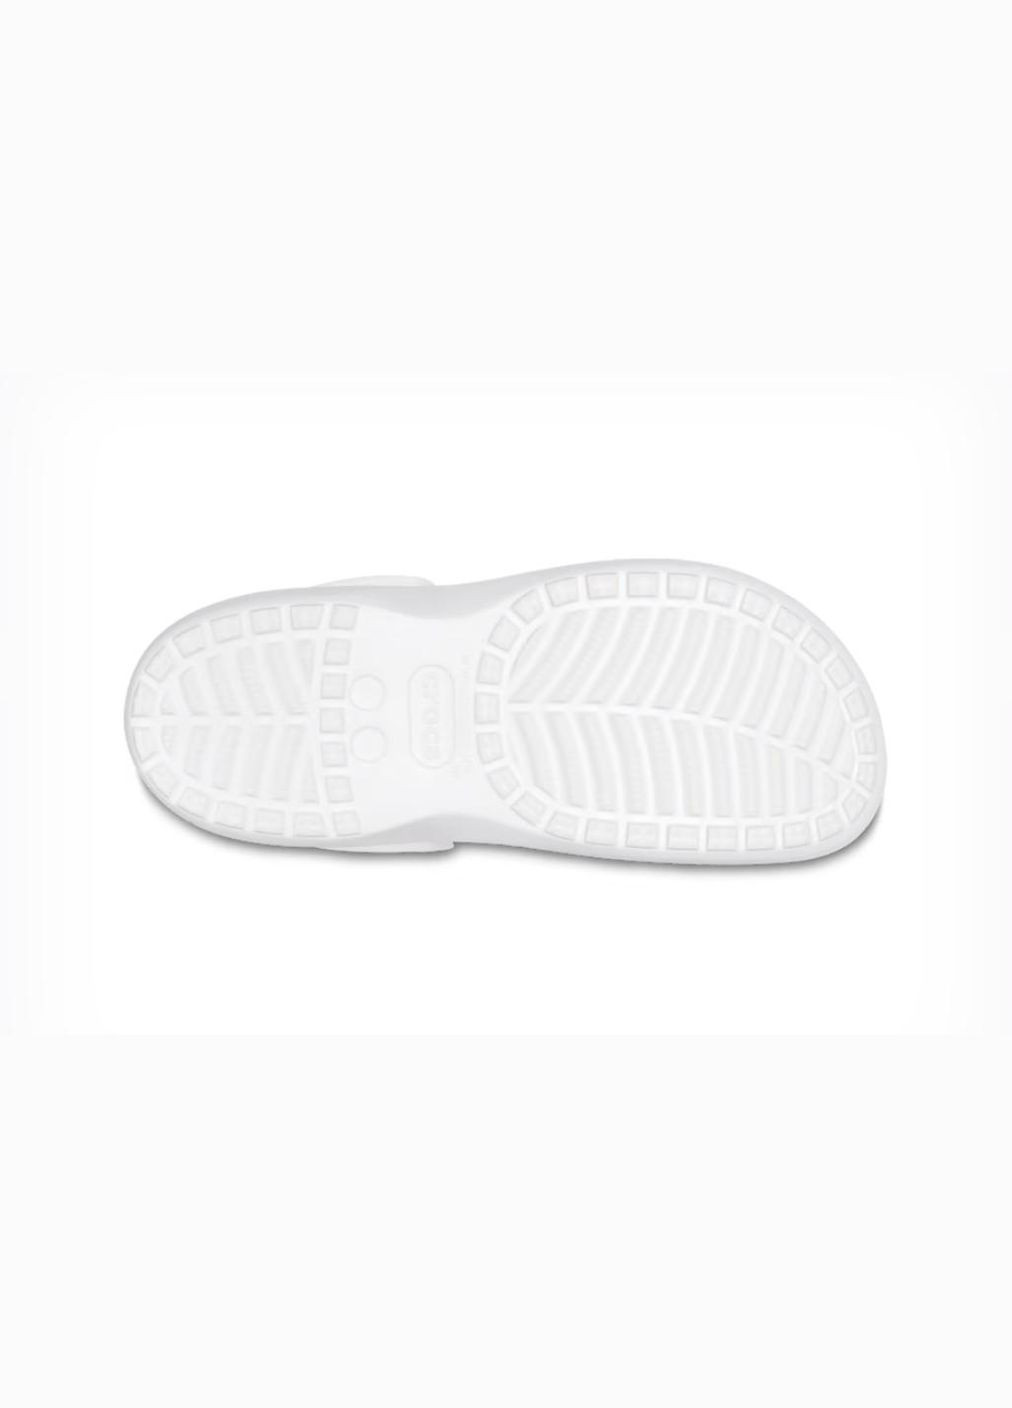 Белые женские кроксы baya platform clog m9w11--27.5 см white 208186 Crocs